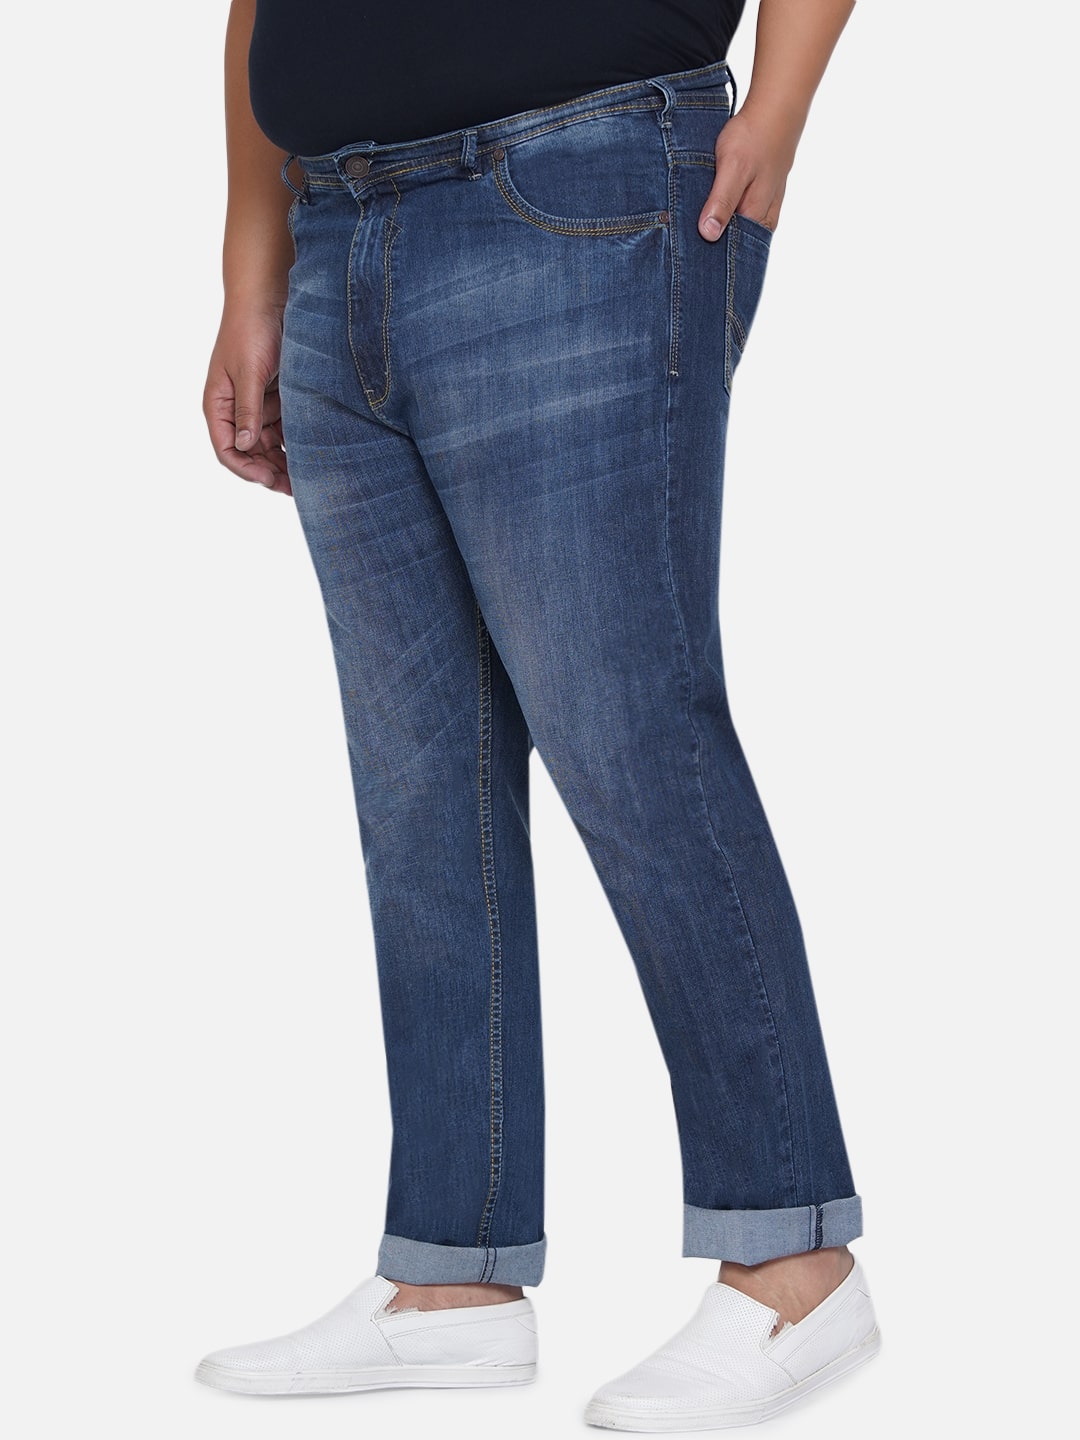 bottomwear/jeans/EJPJ25013/ejpj25013-2.jpg